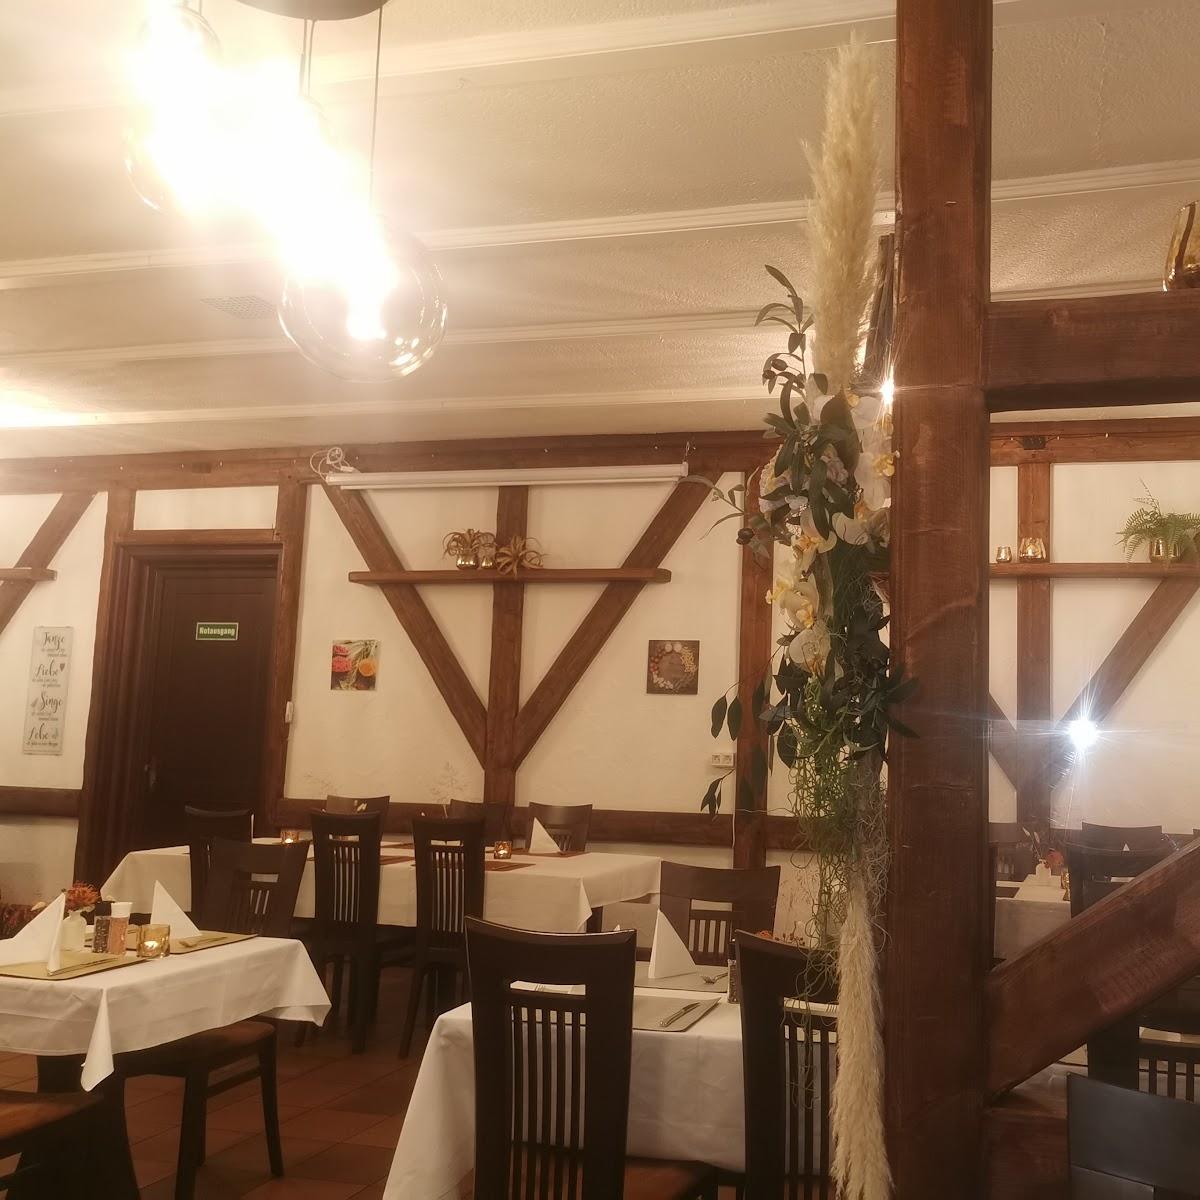 Restaurant "Mediterrana Palace Restaurant" in Stein